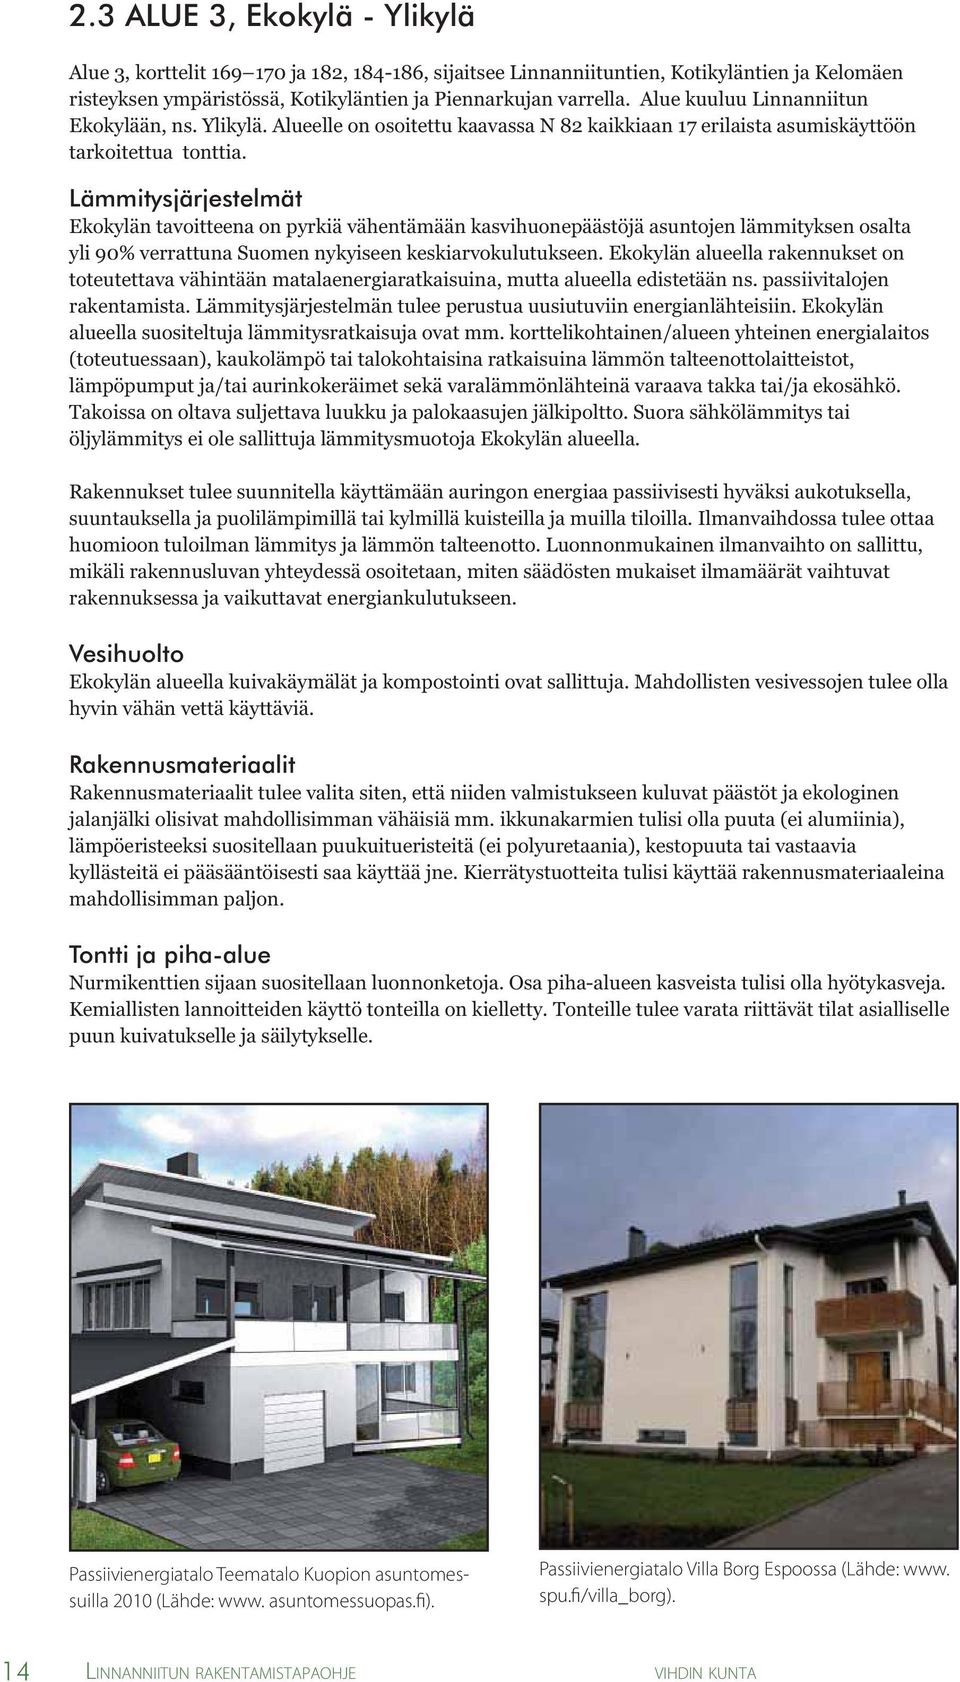 Lämmitysjärjestelmät Ekokylän tavoitteena on pyrkiä vähentämään kasvihuonepäästöjä asuntojen lämmityksen osalta yli 90% verrattuna Suomen nykyiseen keskiarvokulutukseen.